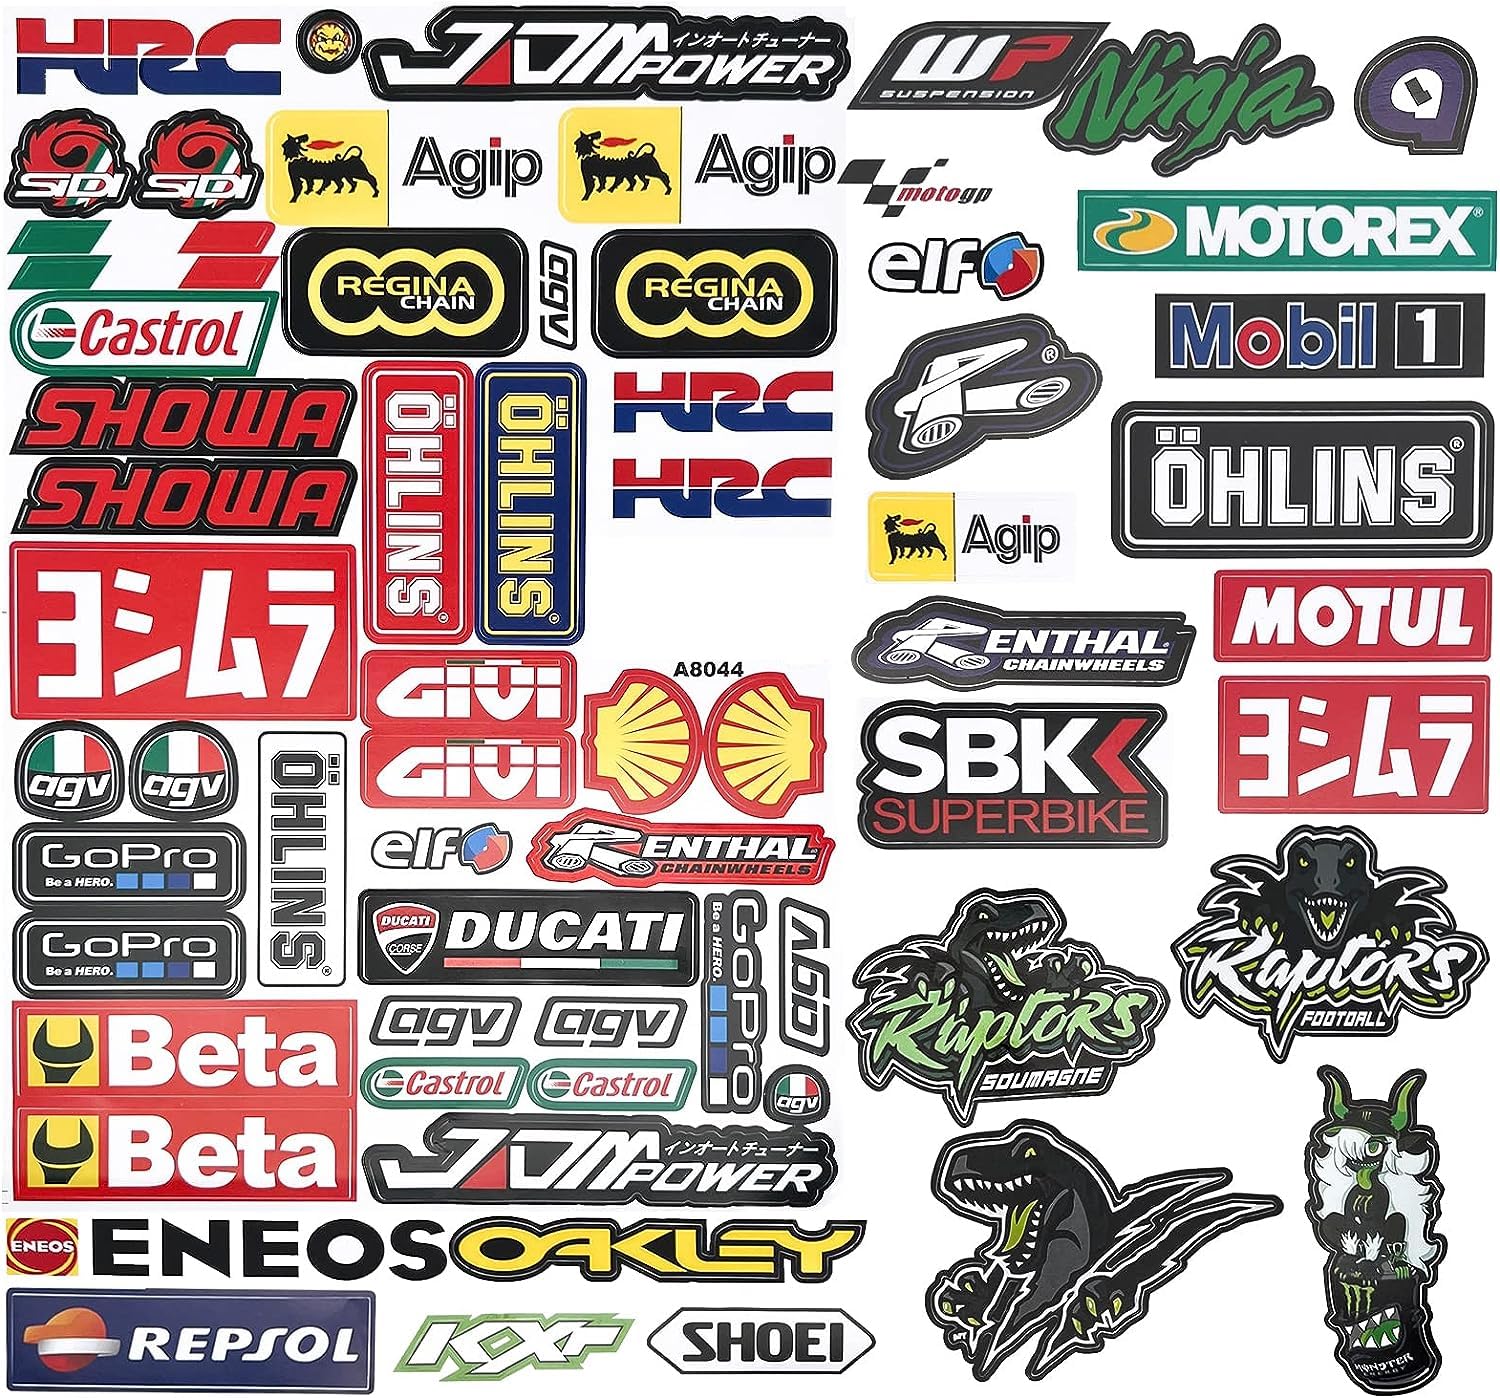 bien vendre Moto Autocollants Sponsor,Utocollant Motocross Graphiques,Ensemble Autocollants Sport,pour Motos,Vélos,Ordinateurs,Skateboards,Modèles Réduits,Décoration De Casques. WaljyiLRv stylé 